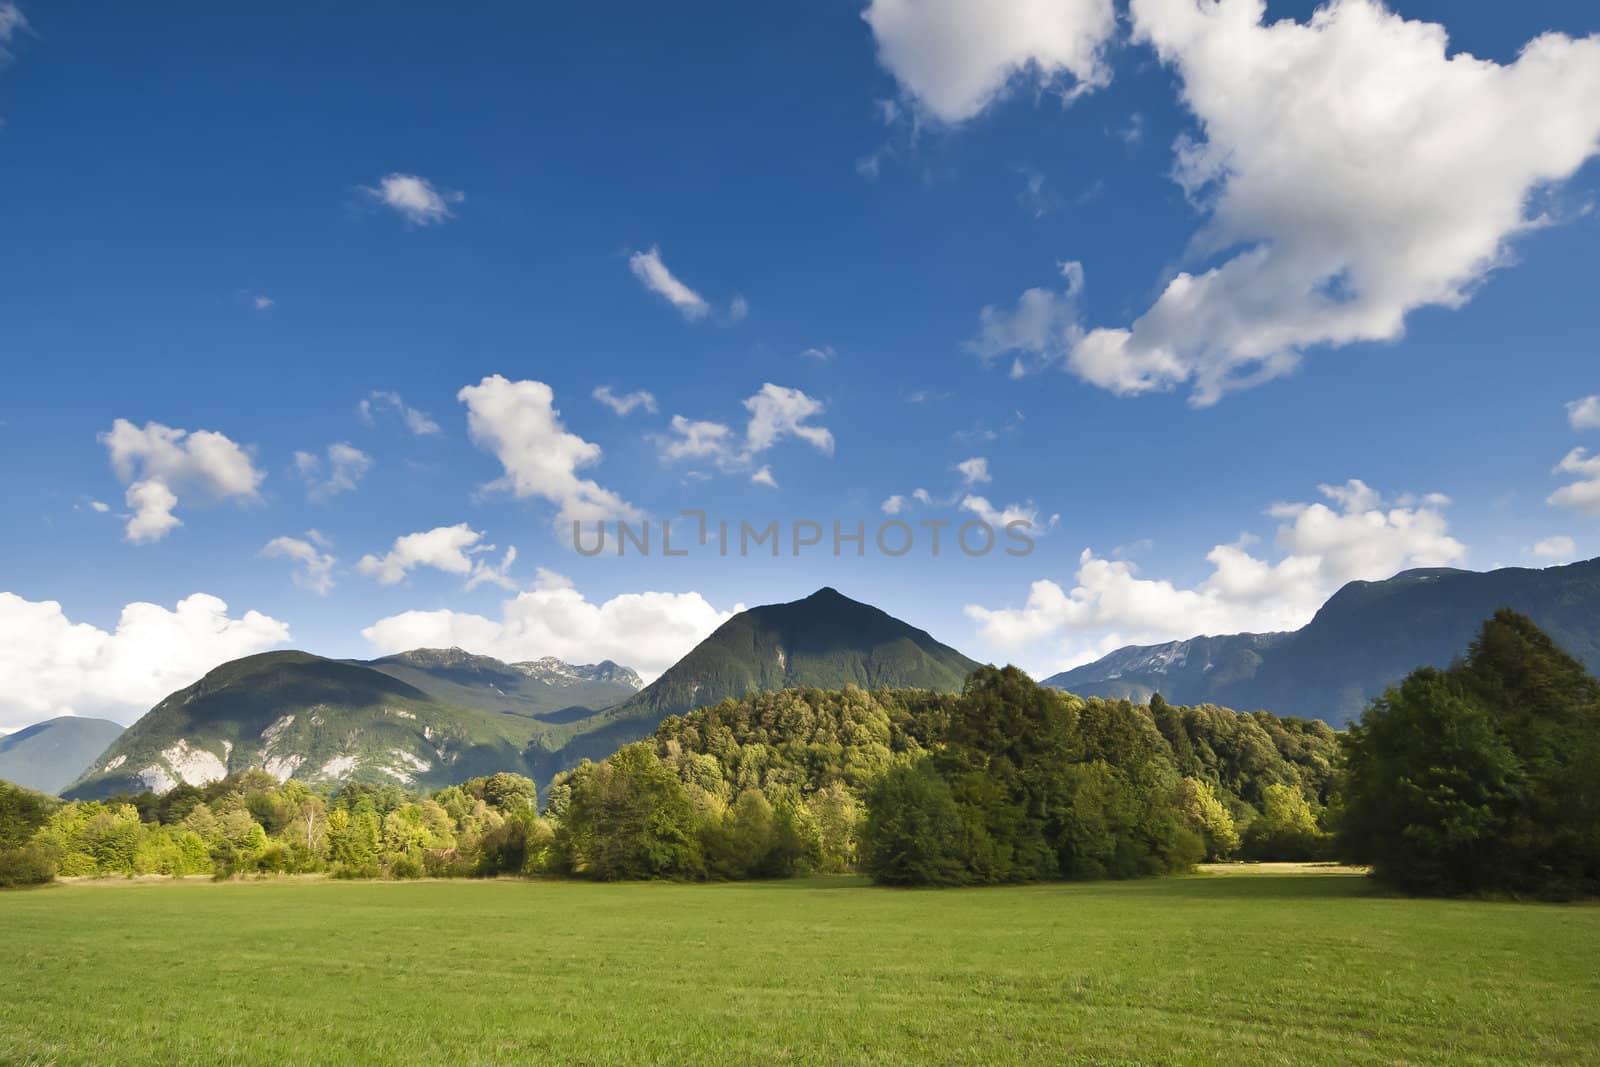 The Julian Alps in Slovenia - wiev from Bovec by furzyk73